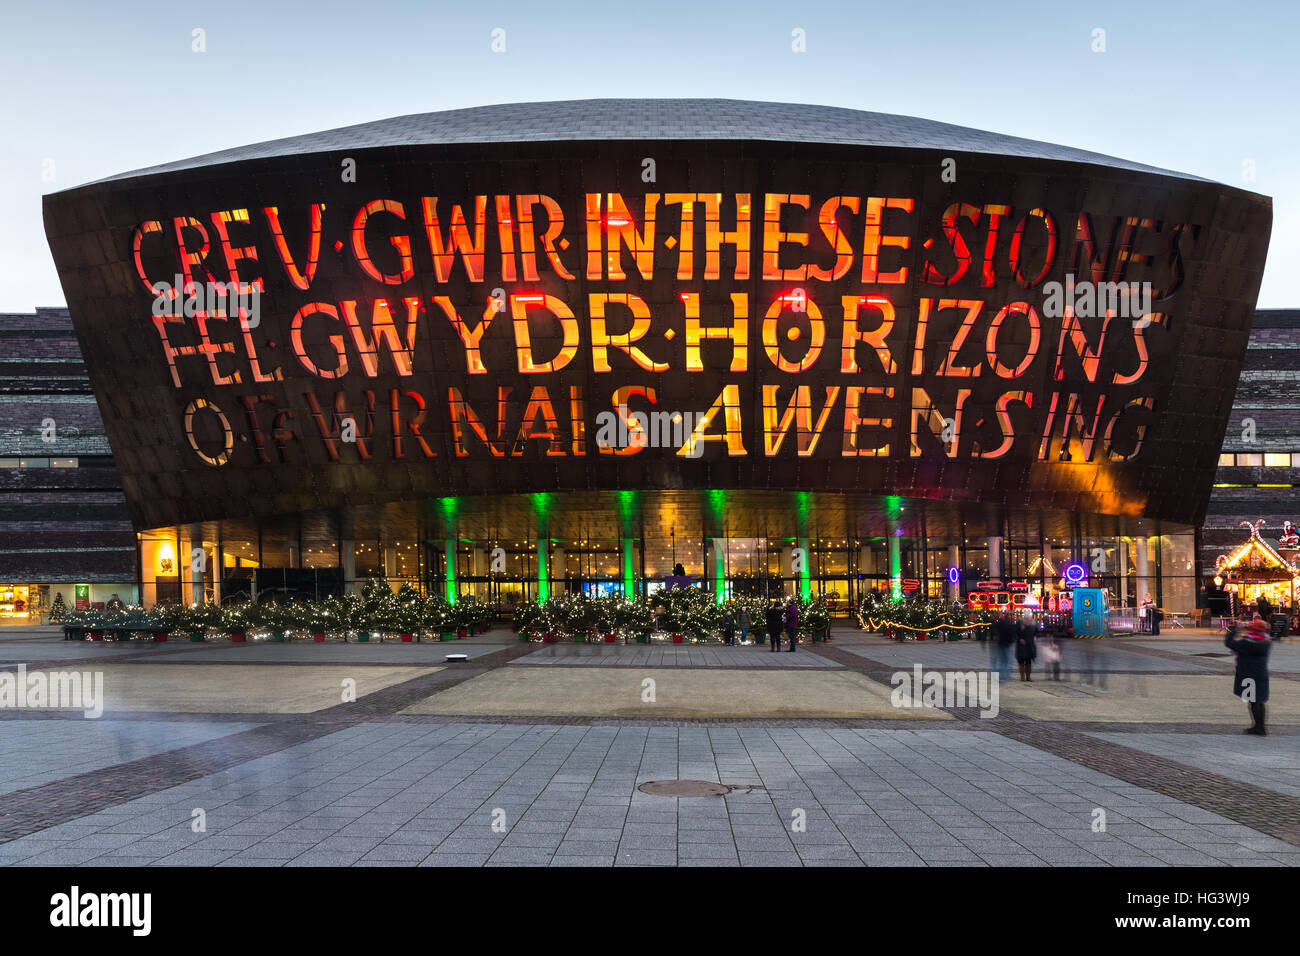 Il Cardiff Wales Millennium Centre arts complex illuminato di sera presto, Cardiff Bay, Glamorgan, Wales, Regno Unito Foto Stock